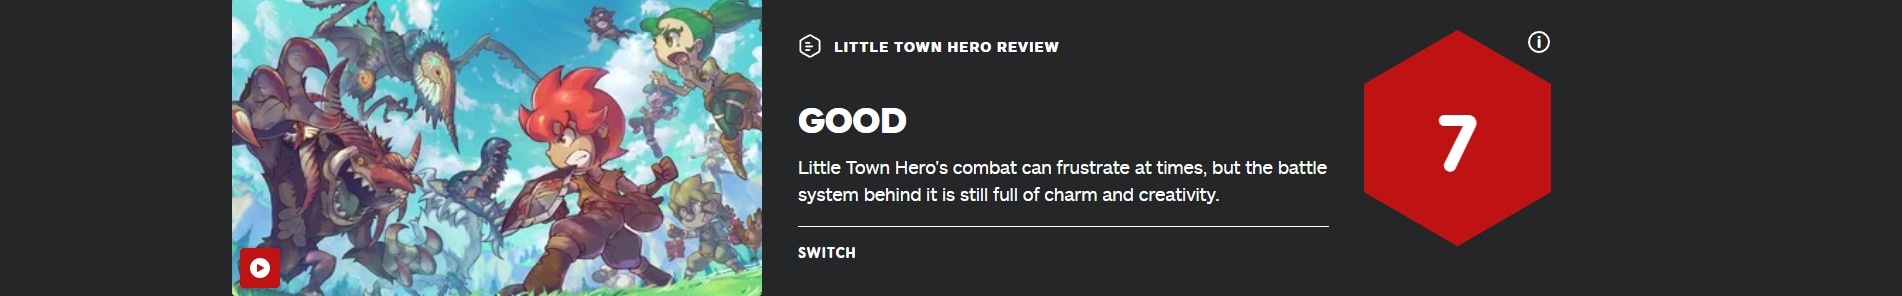 GF新作《小鎮英雄》IGN7分 戰鬥有創意但會讓人挫敗